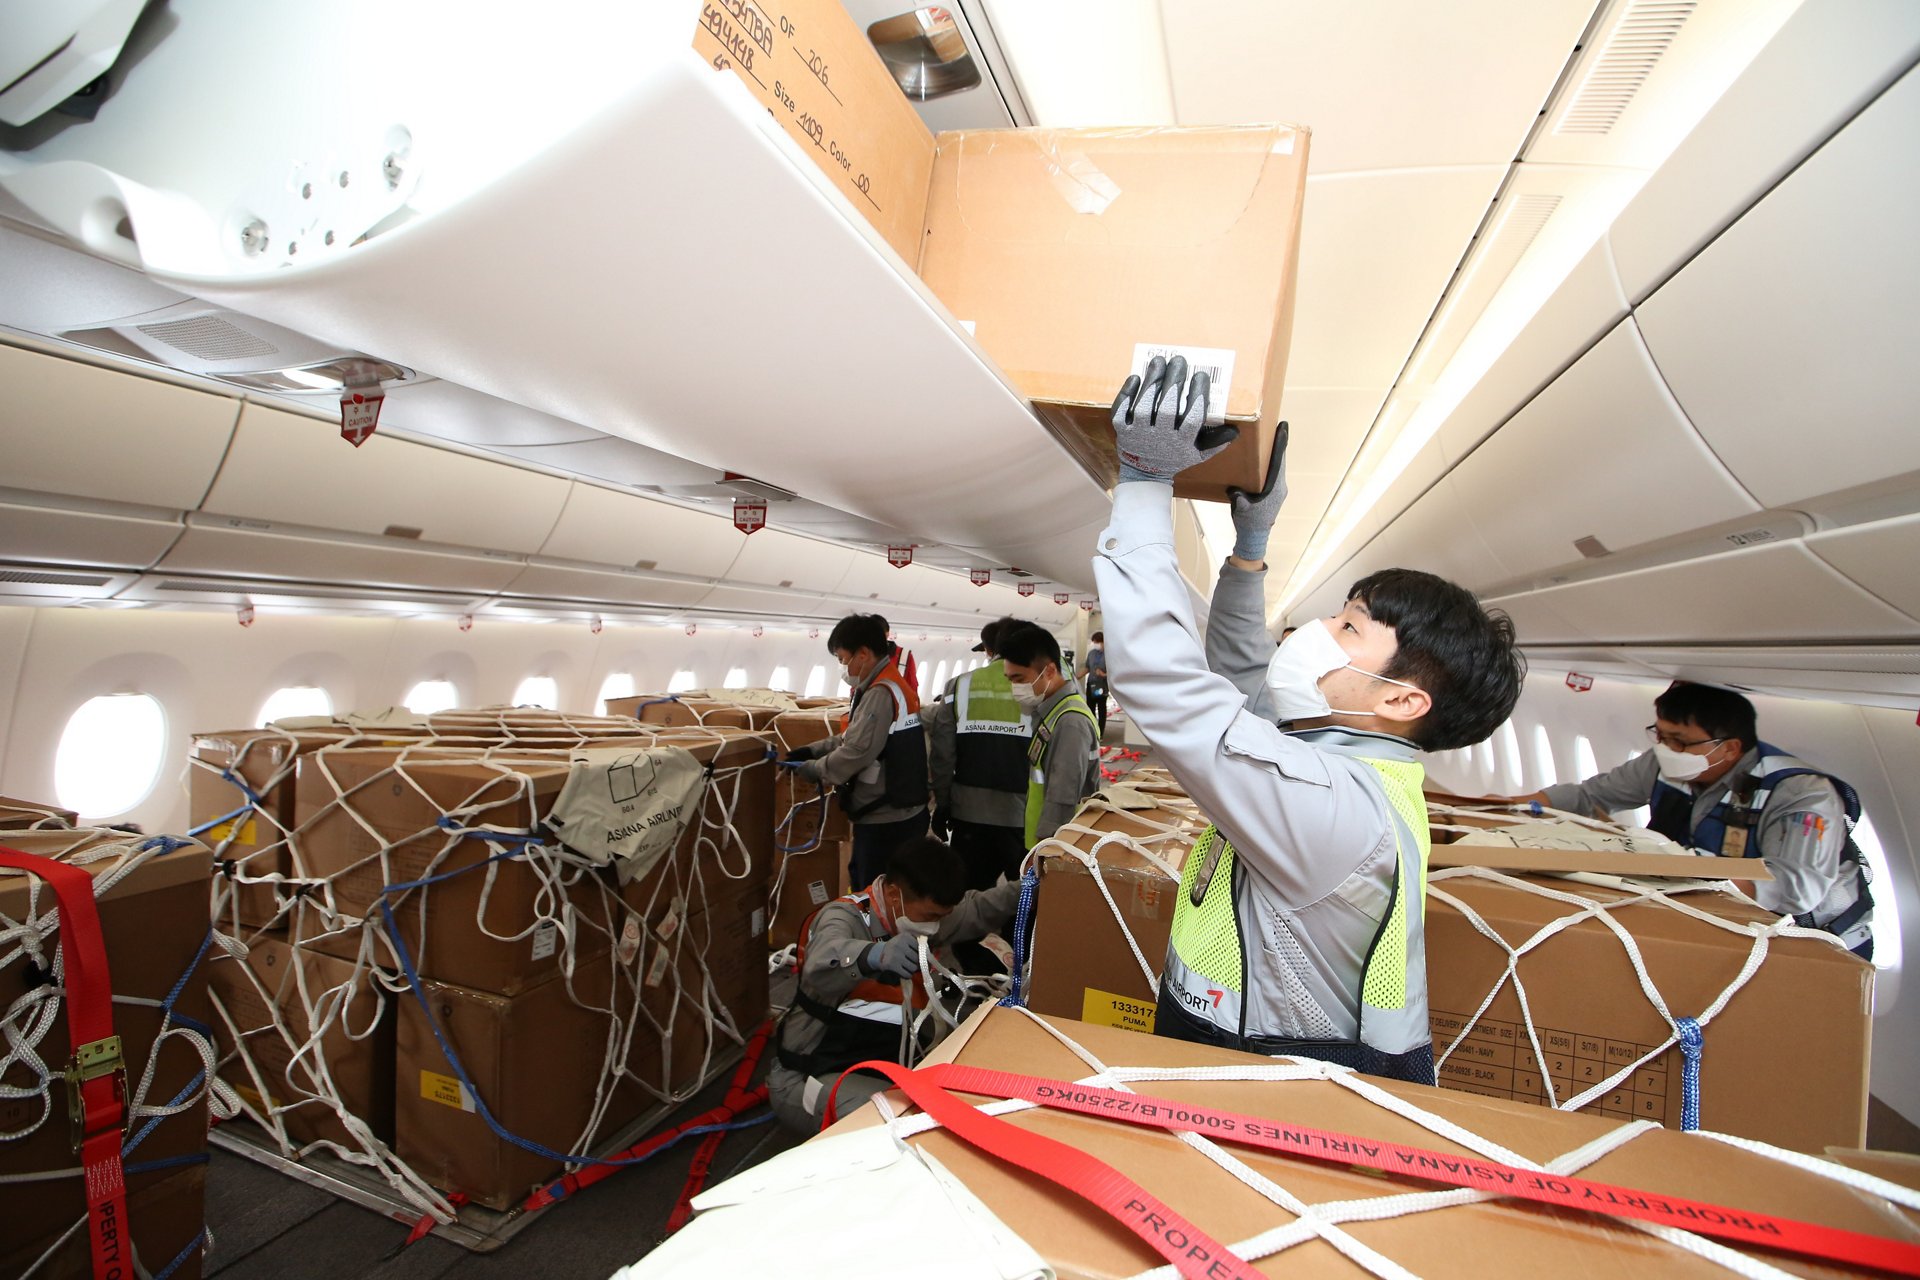 Carga Asiana Airlines A350 após o carregamento da modificação